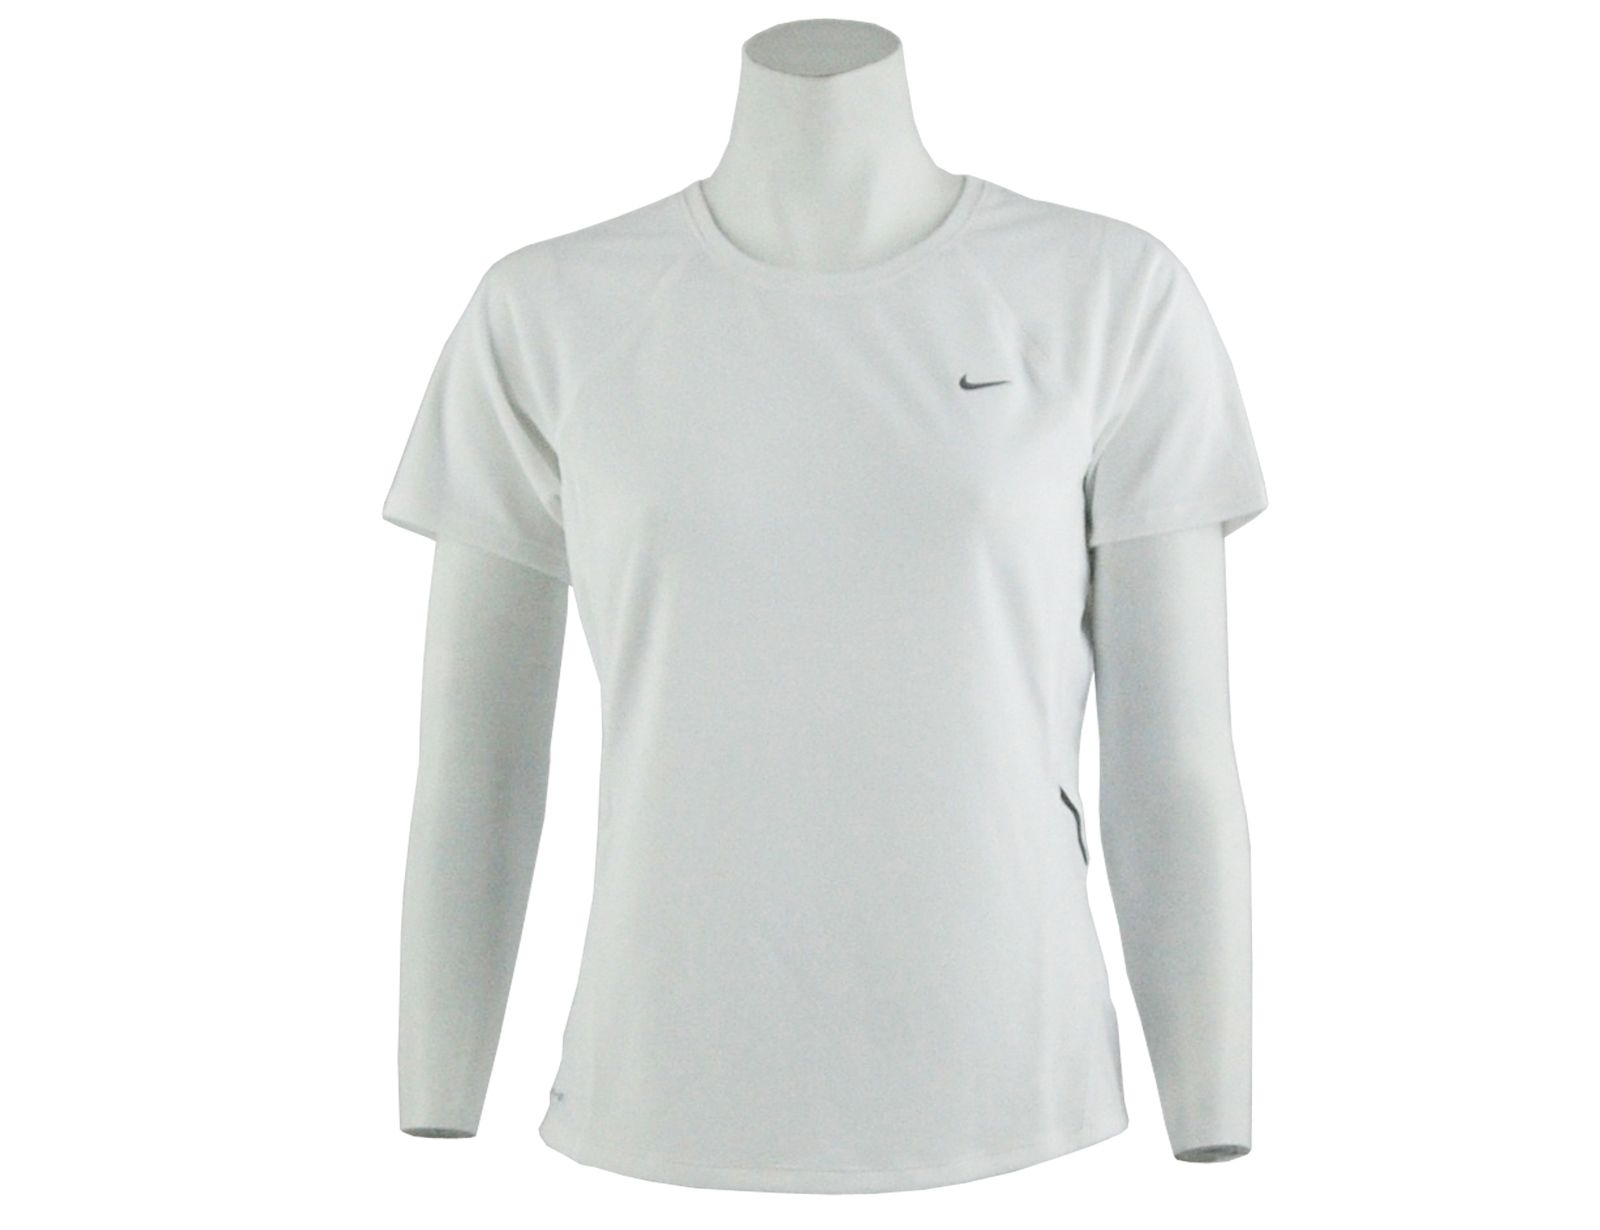 Avantisport - Nike - Dri-fit Short Sleeve Baselayer Top - Nike Dri-fit